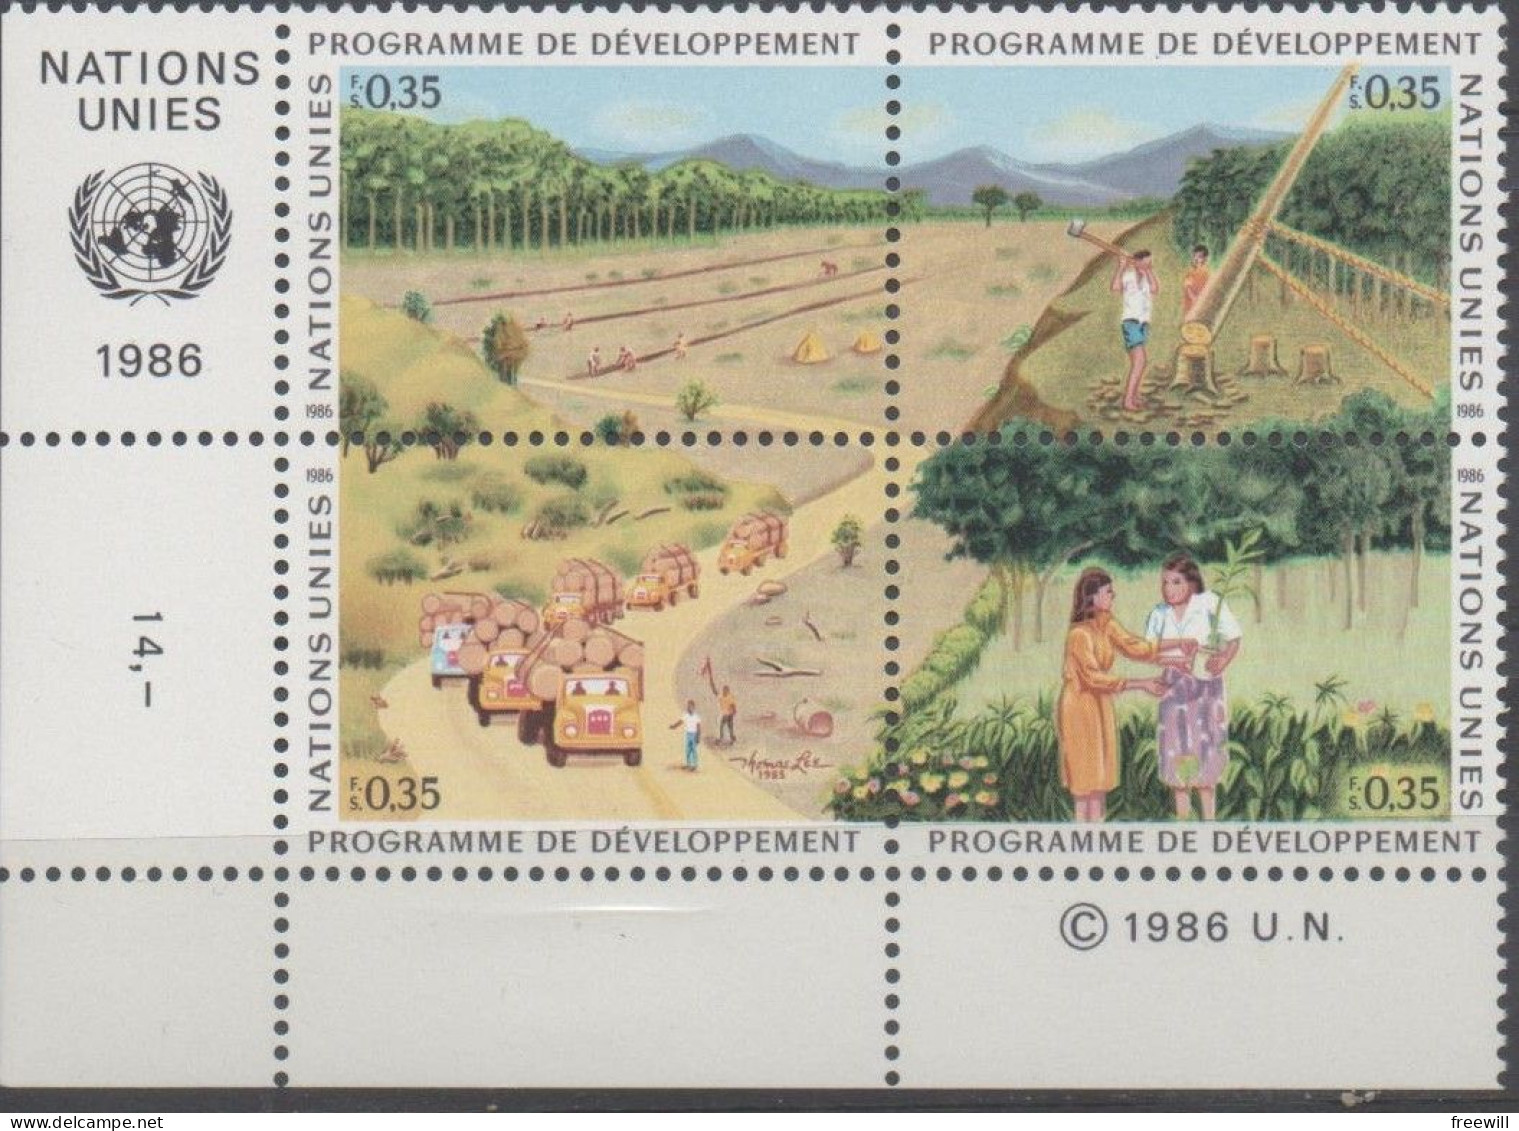 Nations Unies , United Nations Programme De Développement XXX 1986 - Unused Stamps